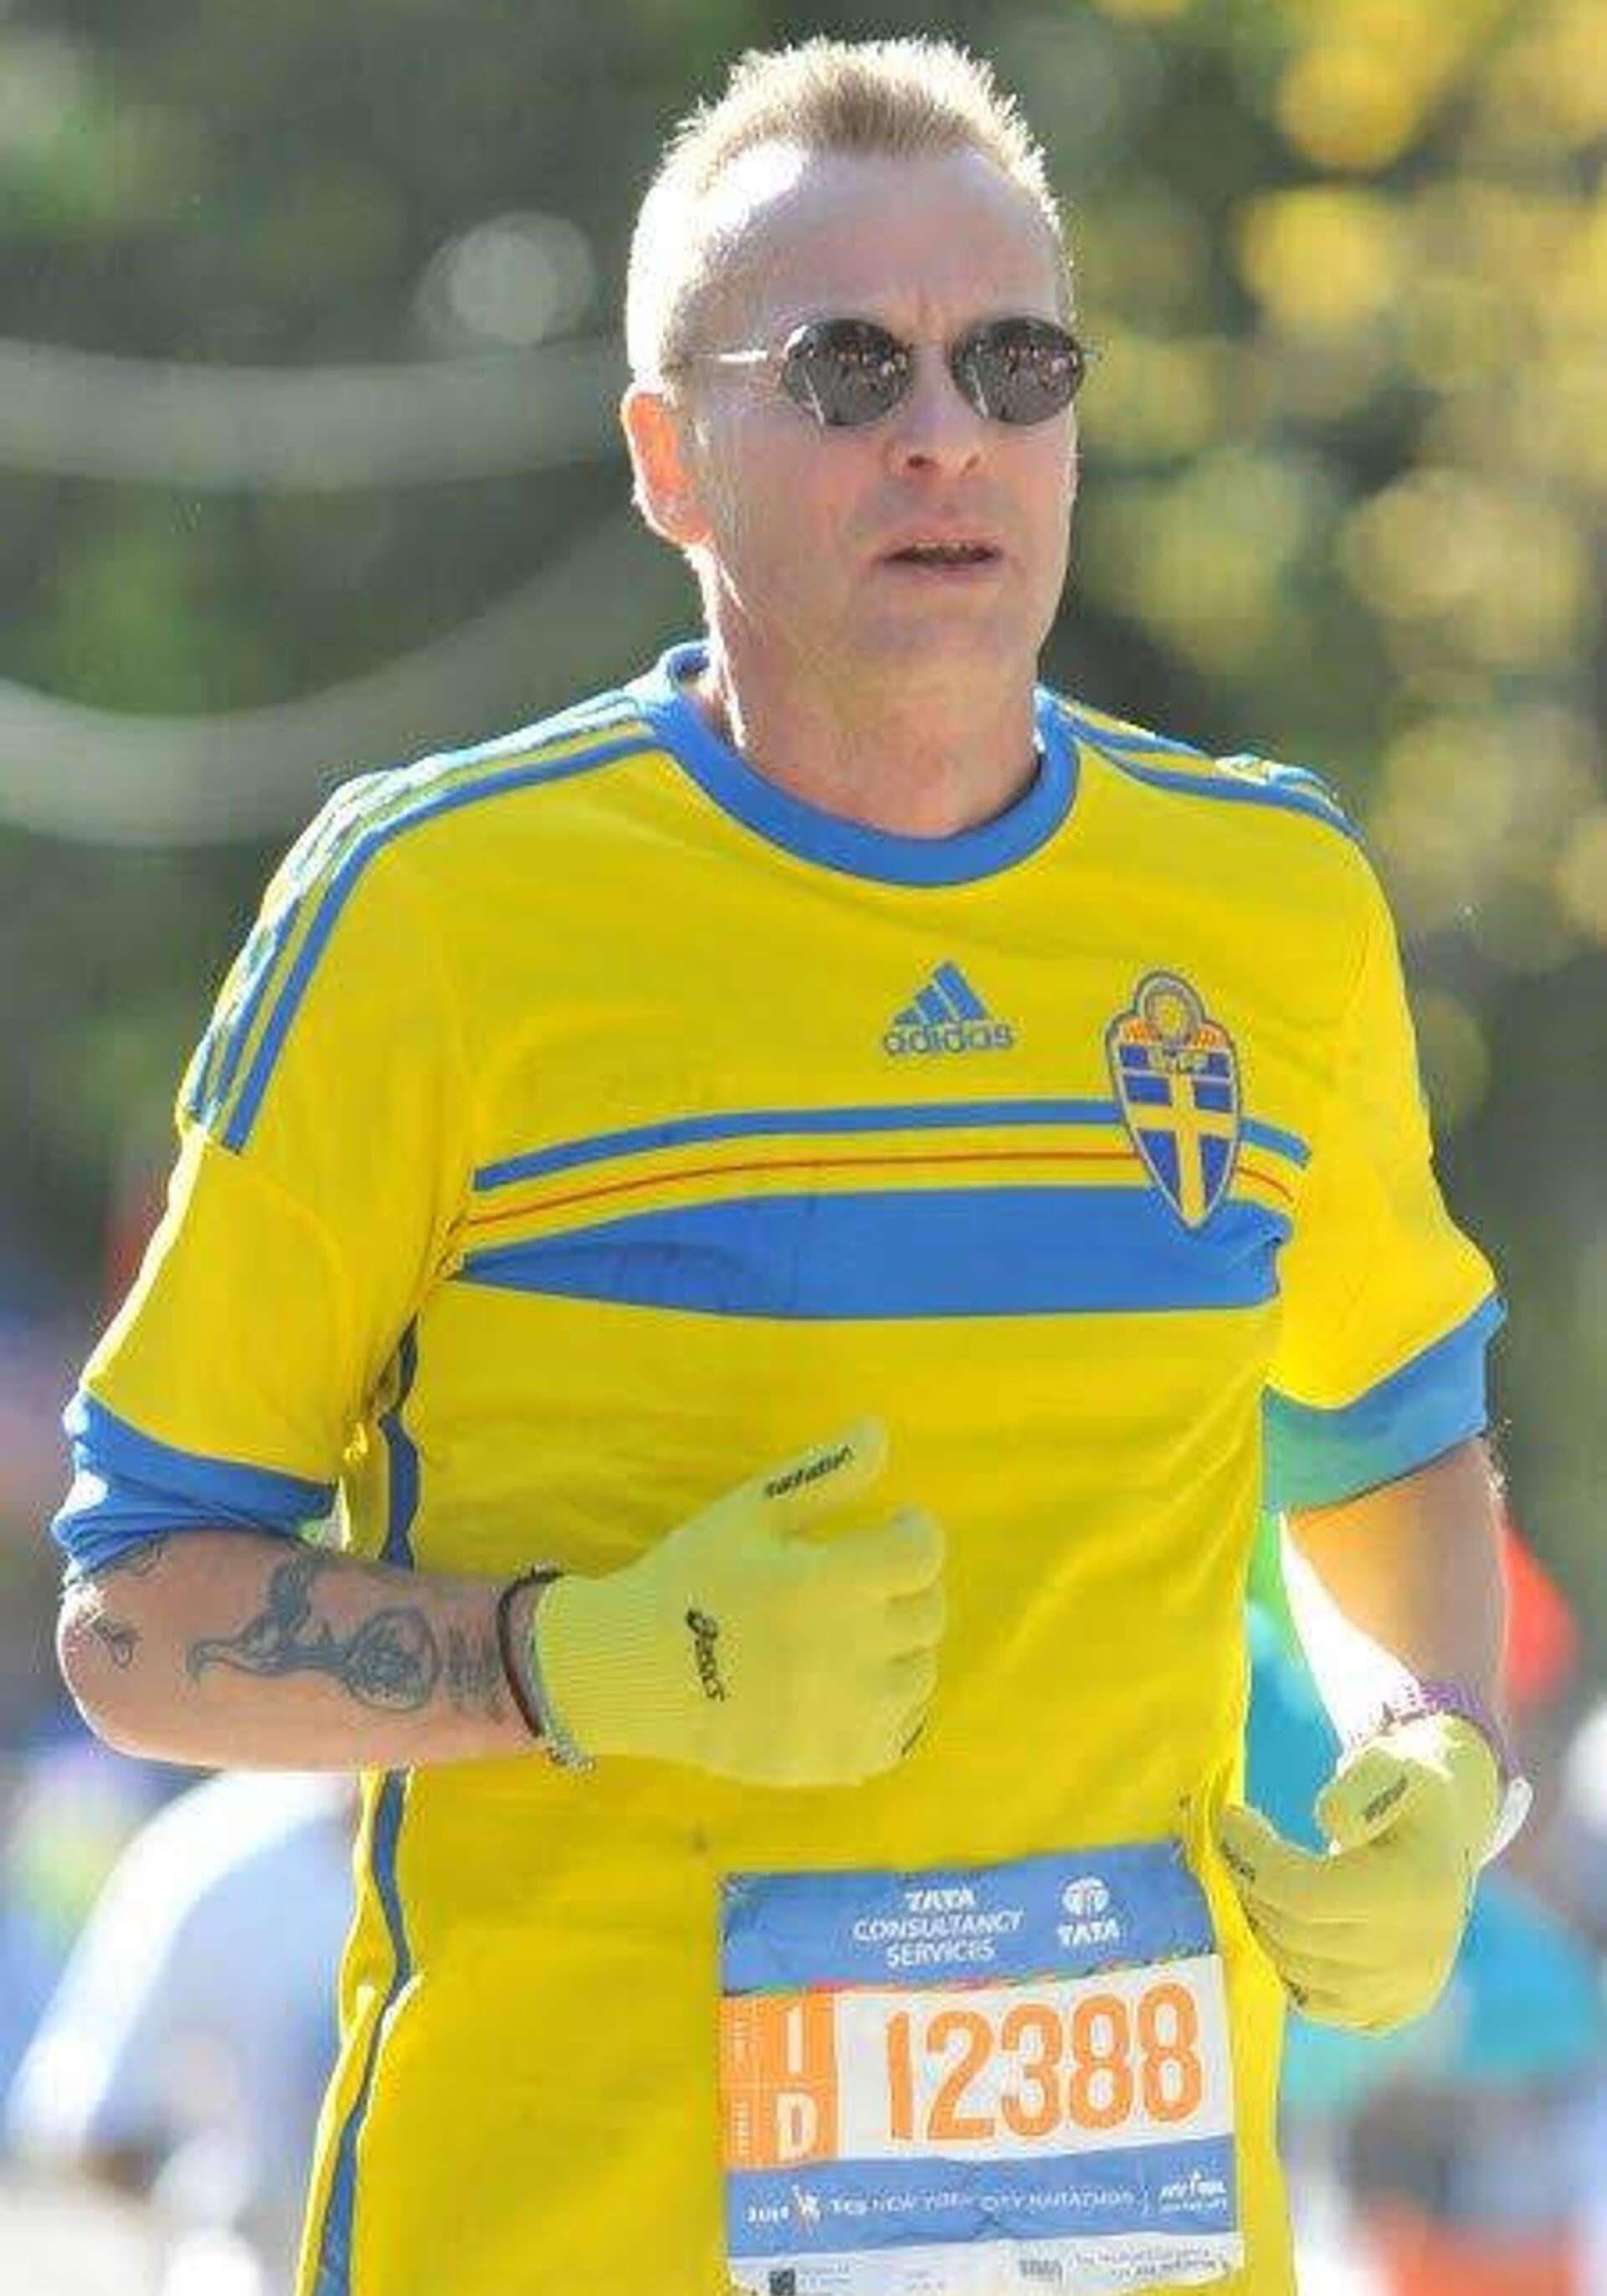 Rolf iklädd den Sverigetröja han brukade springa i till en början, här i New York 2014.